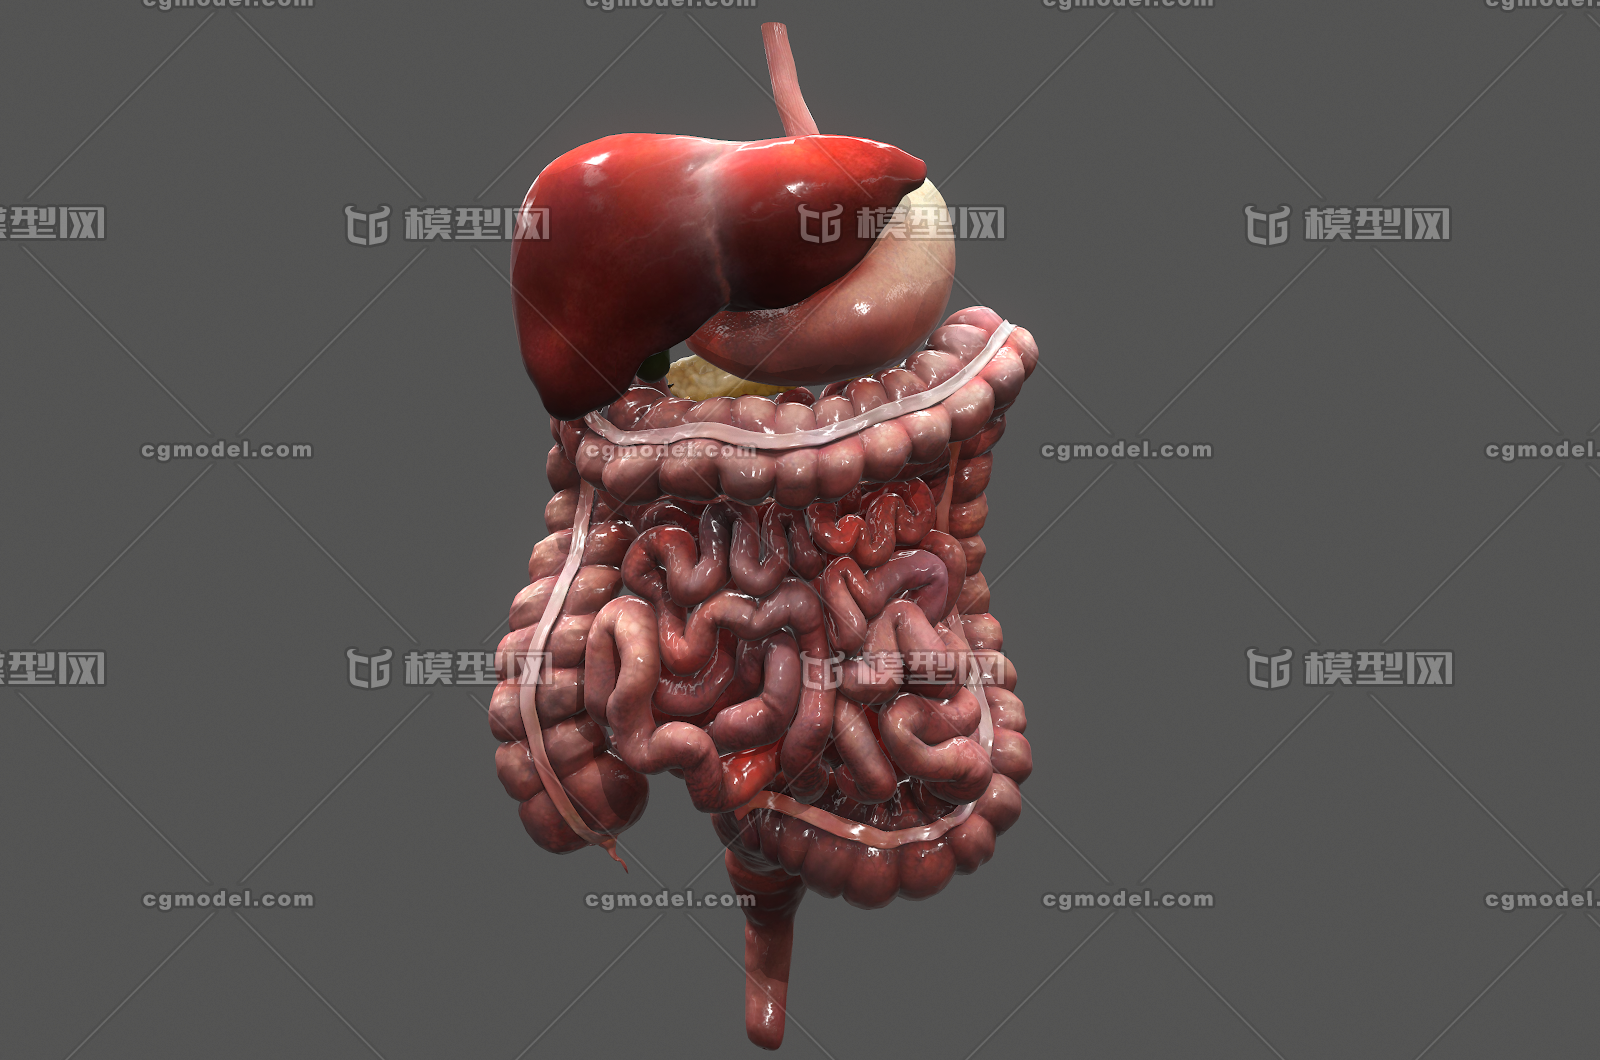 176 次世代 消化系统医疗模型 胰脏 肝胃 肠道 胆囊 脾脏 大肠 小肠